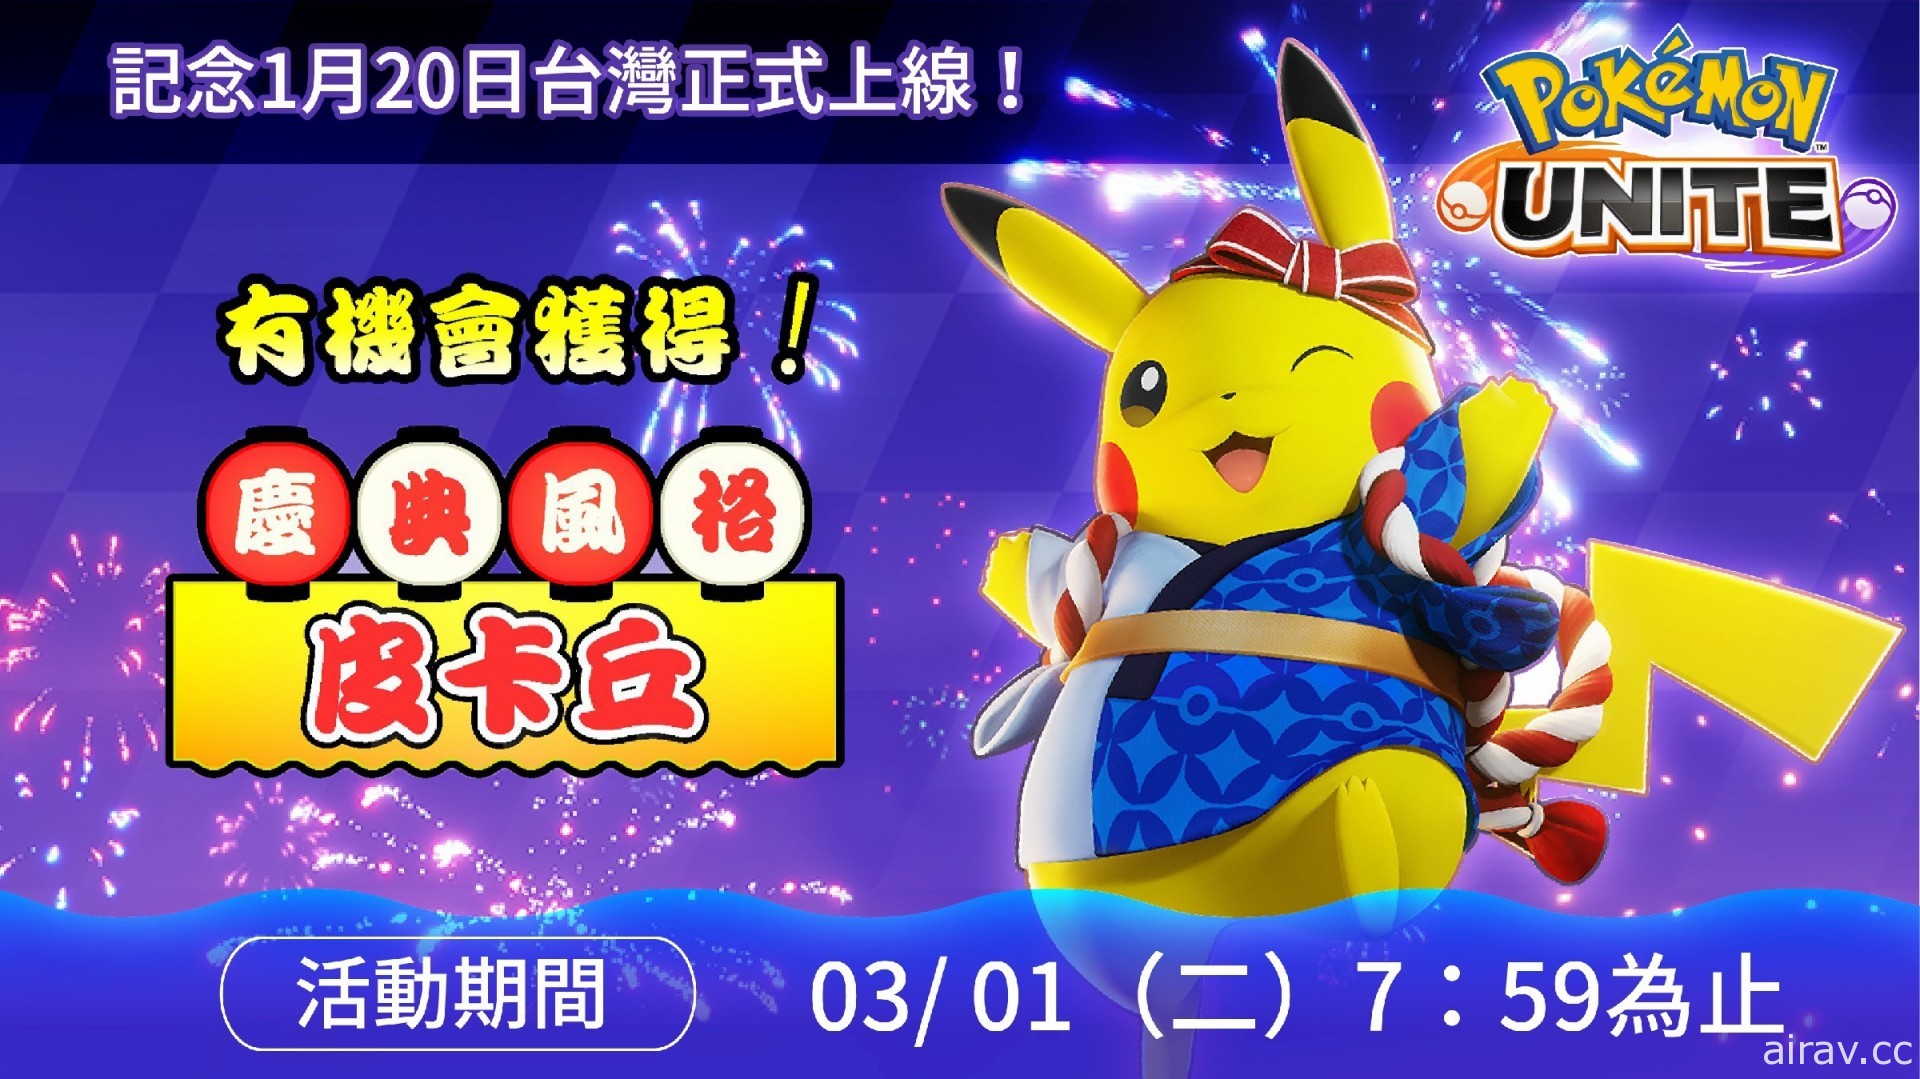 《宝可梦大集结》手机版宣布台湾区服务上线日 推出皮卡丘“庆典风格”特别电子服